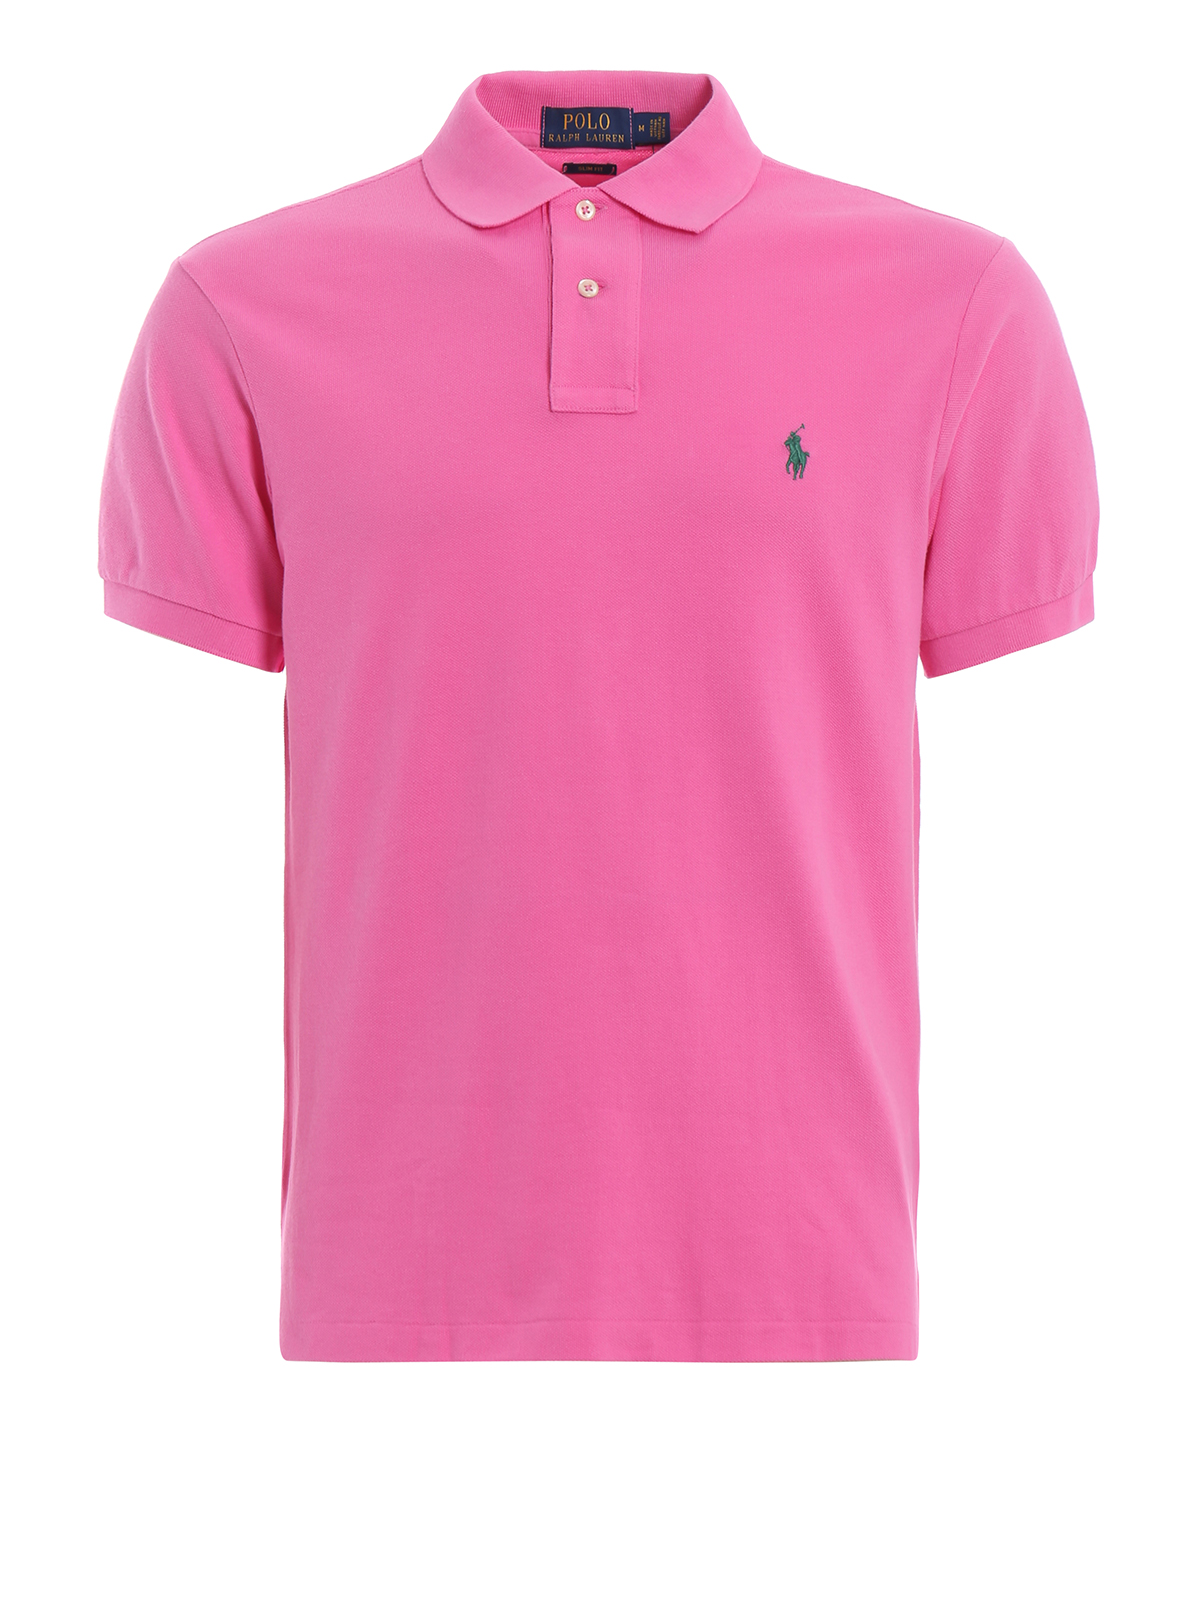 Pink Polo Shirt Mockup